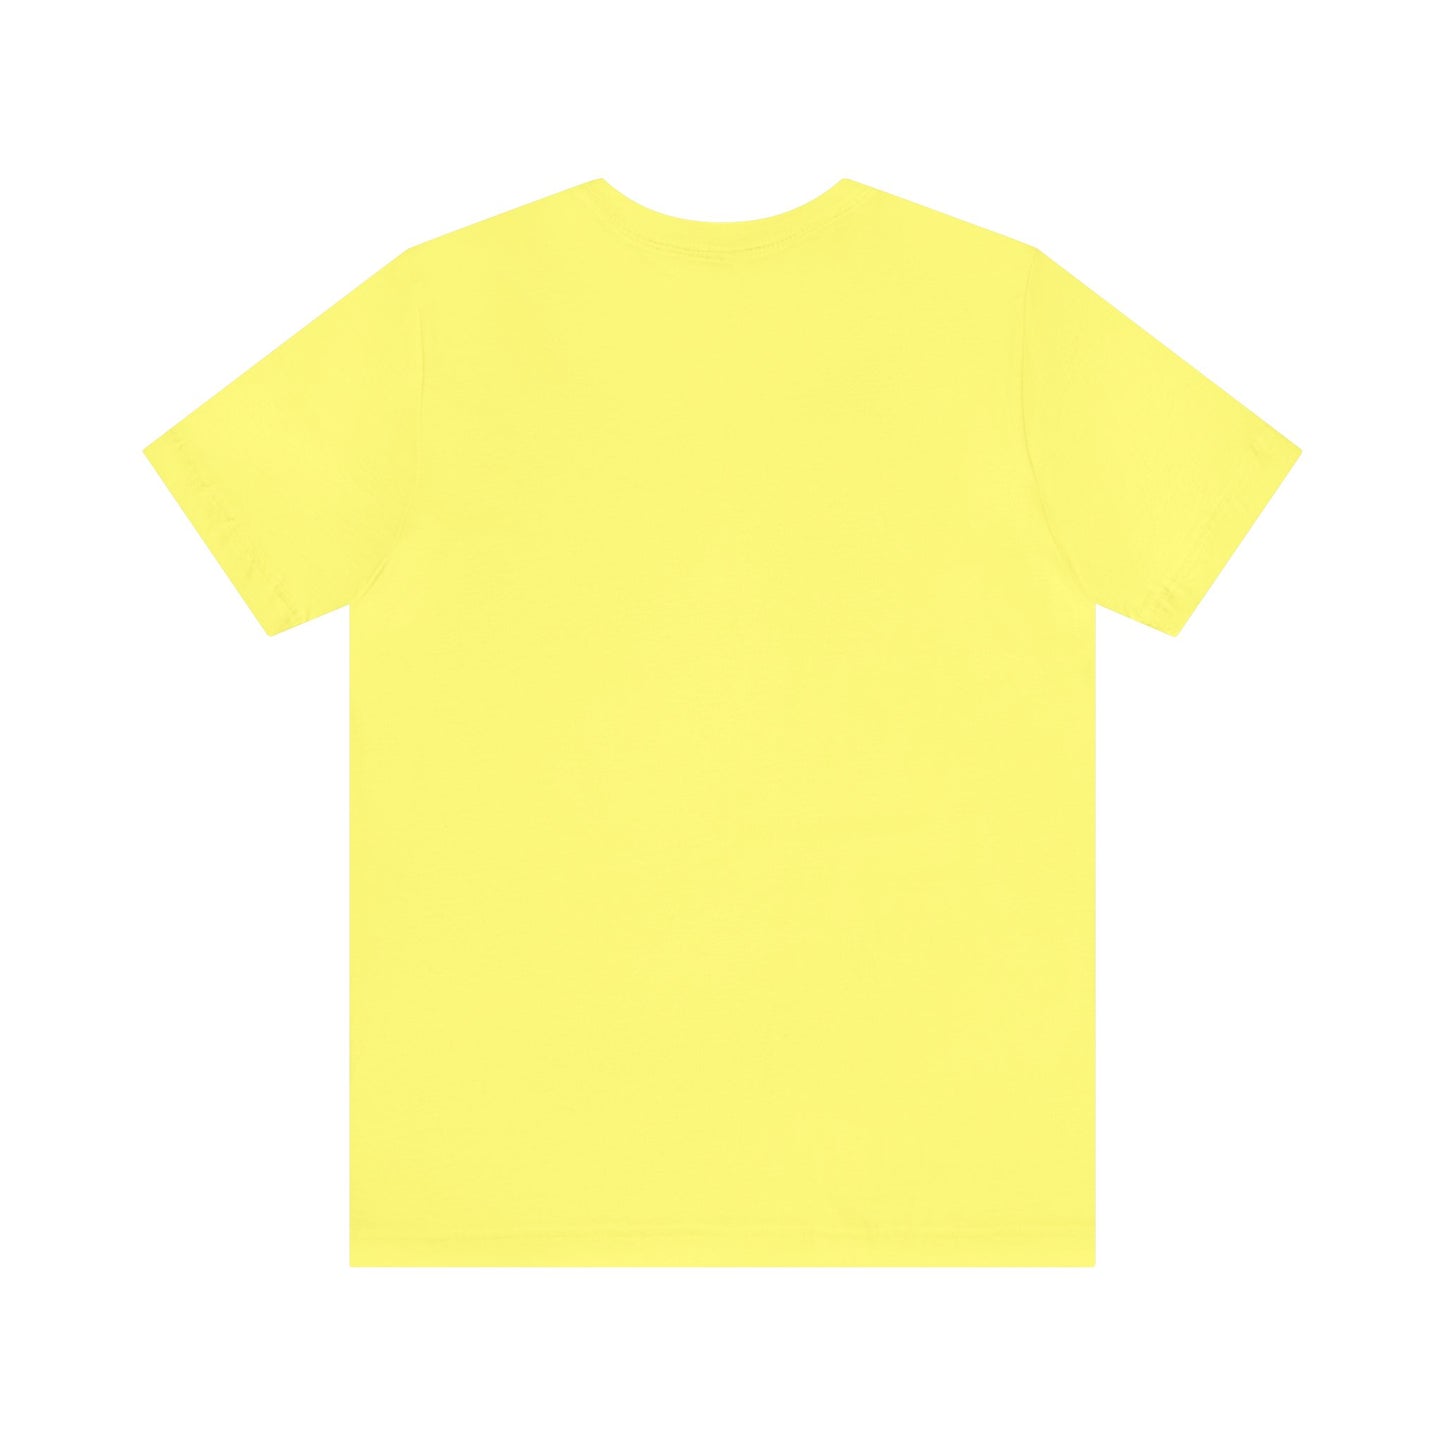 Unisex Jersey Short Sleeve Yellow T Shirt